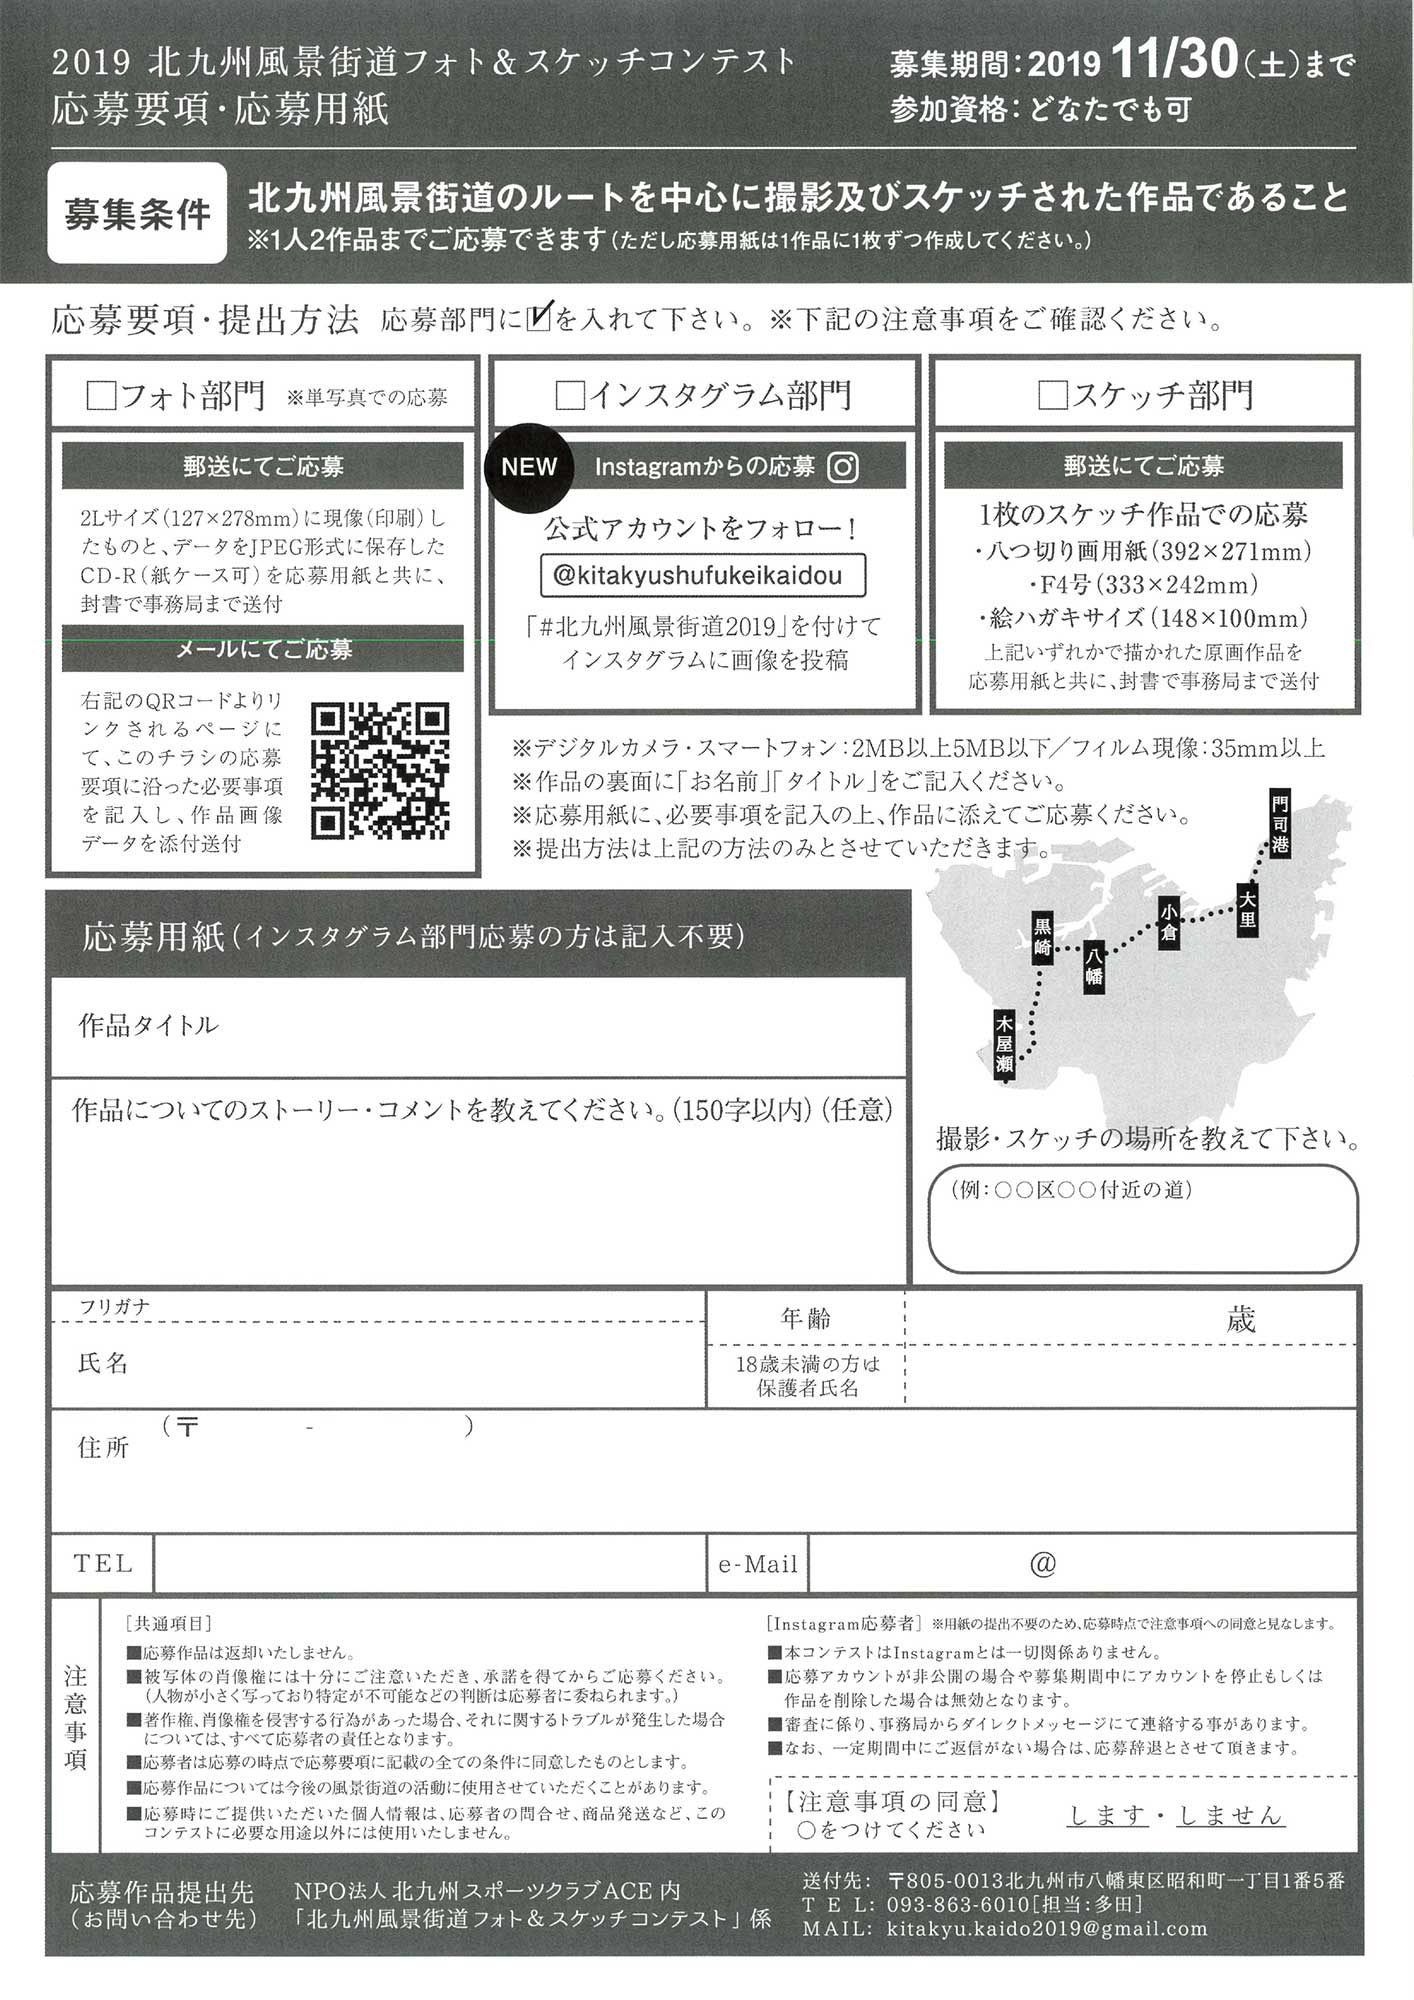 2019北九州風景街道 フォト&スケッチ コンテスト